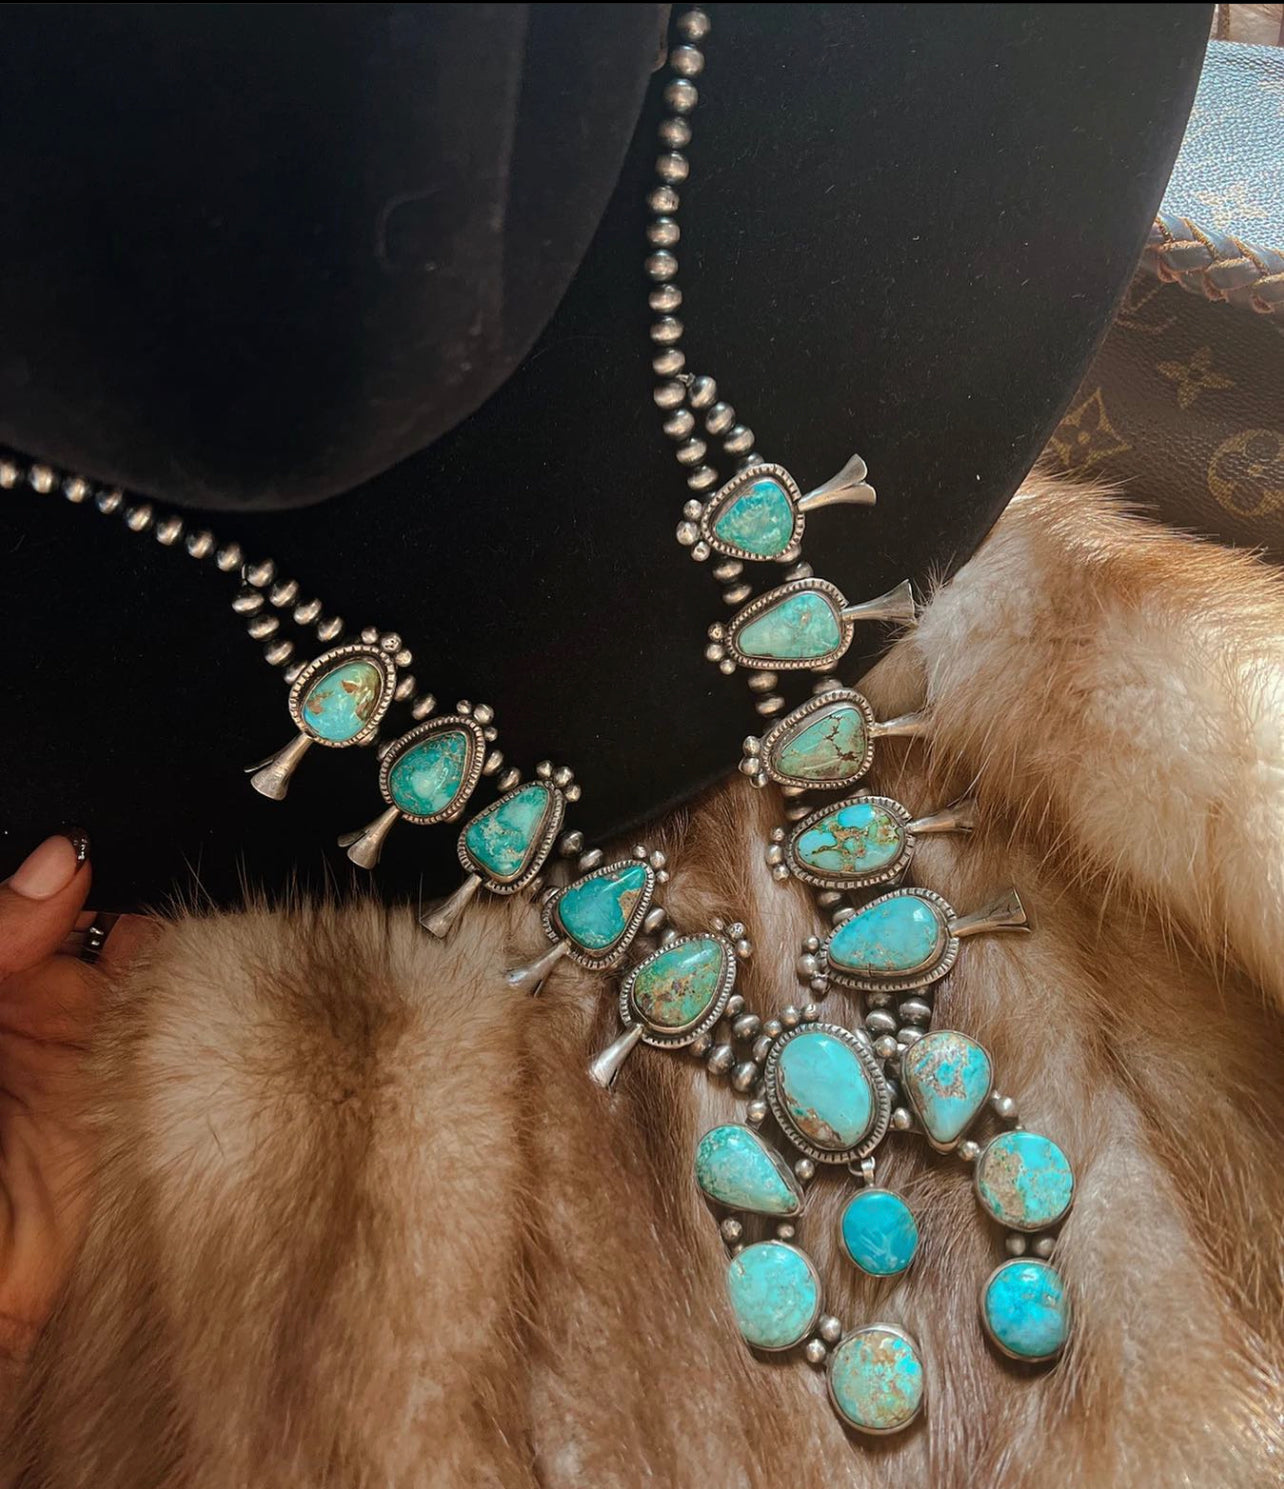 Authentic Navajo & Turquoise Jewelry